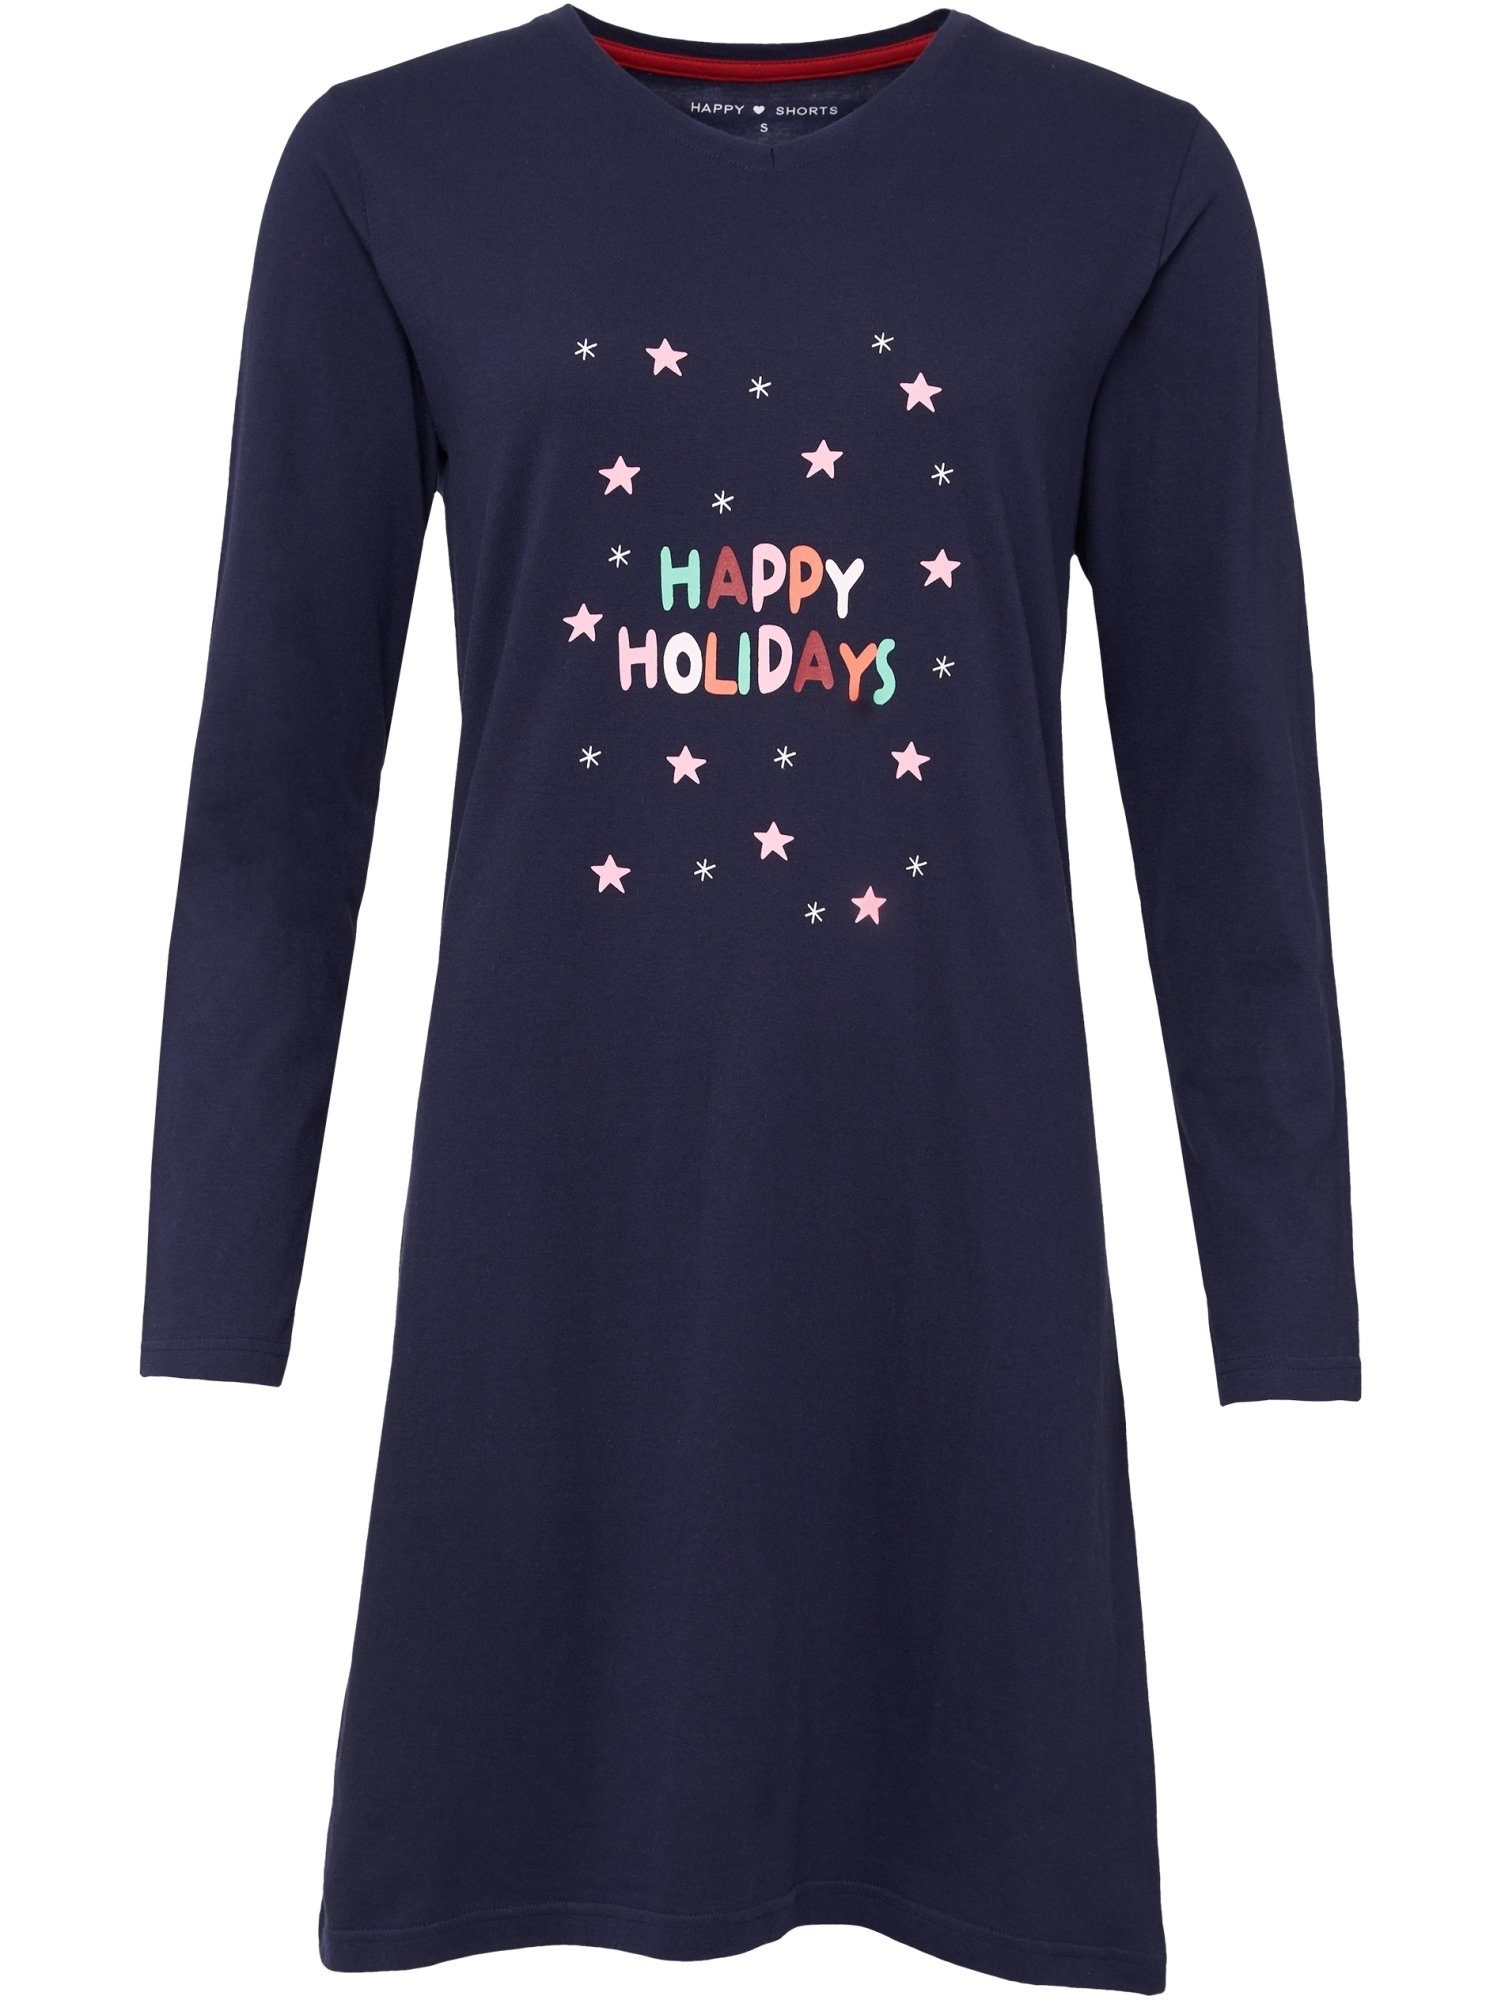 HAPPY SHORTS Nachthemd Xmas Nacht-hemd schlafmode sleepwear navy | Nachthemden